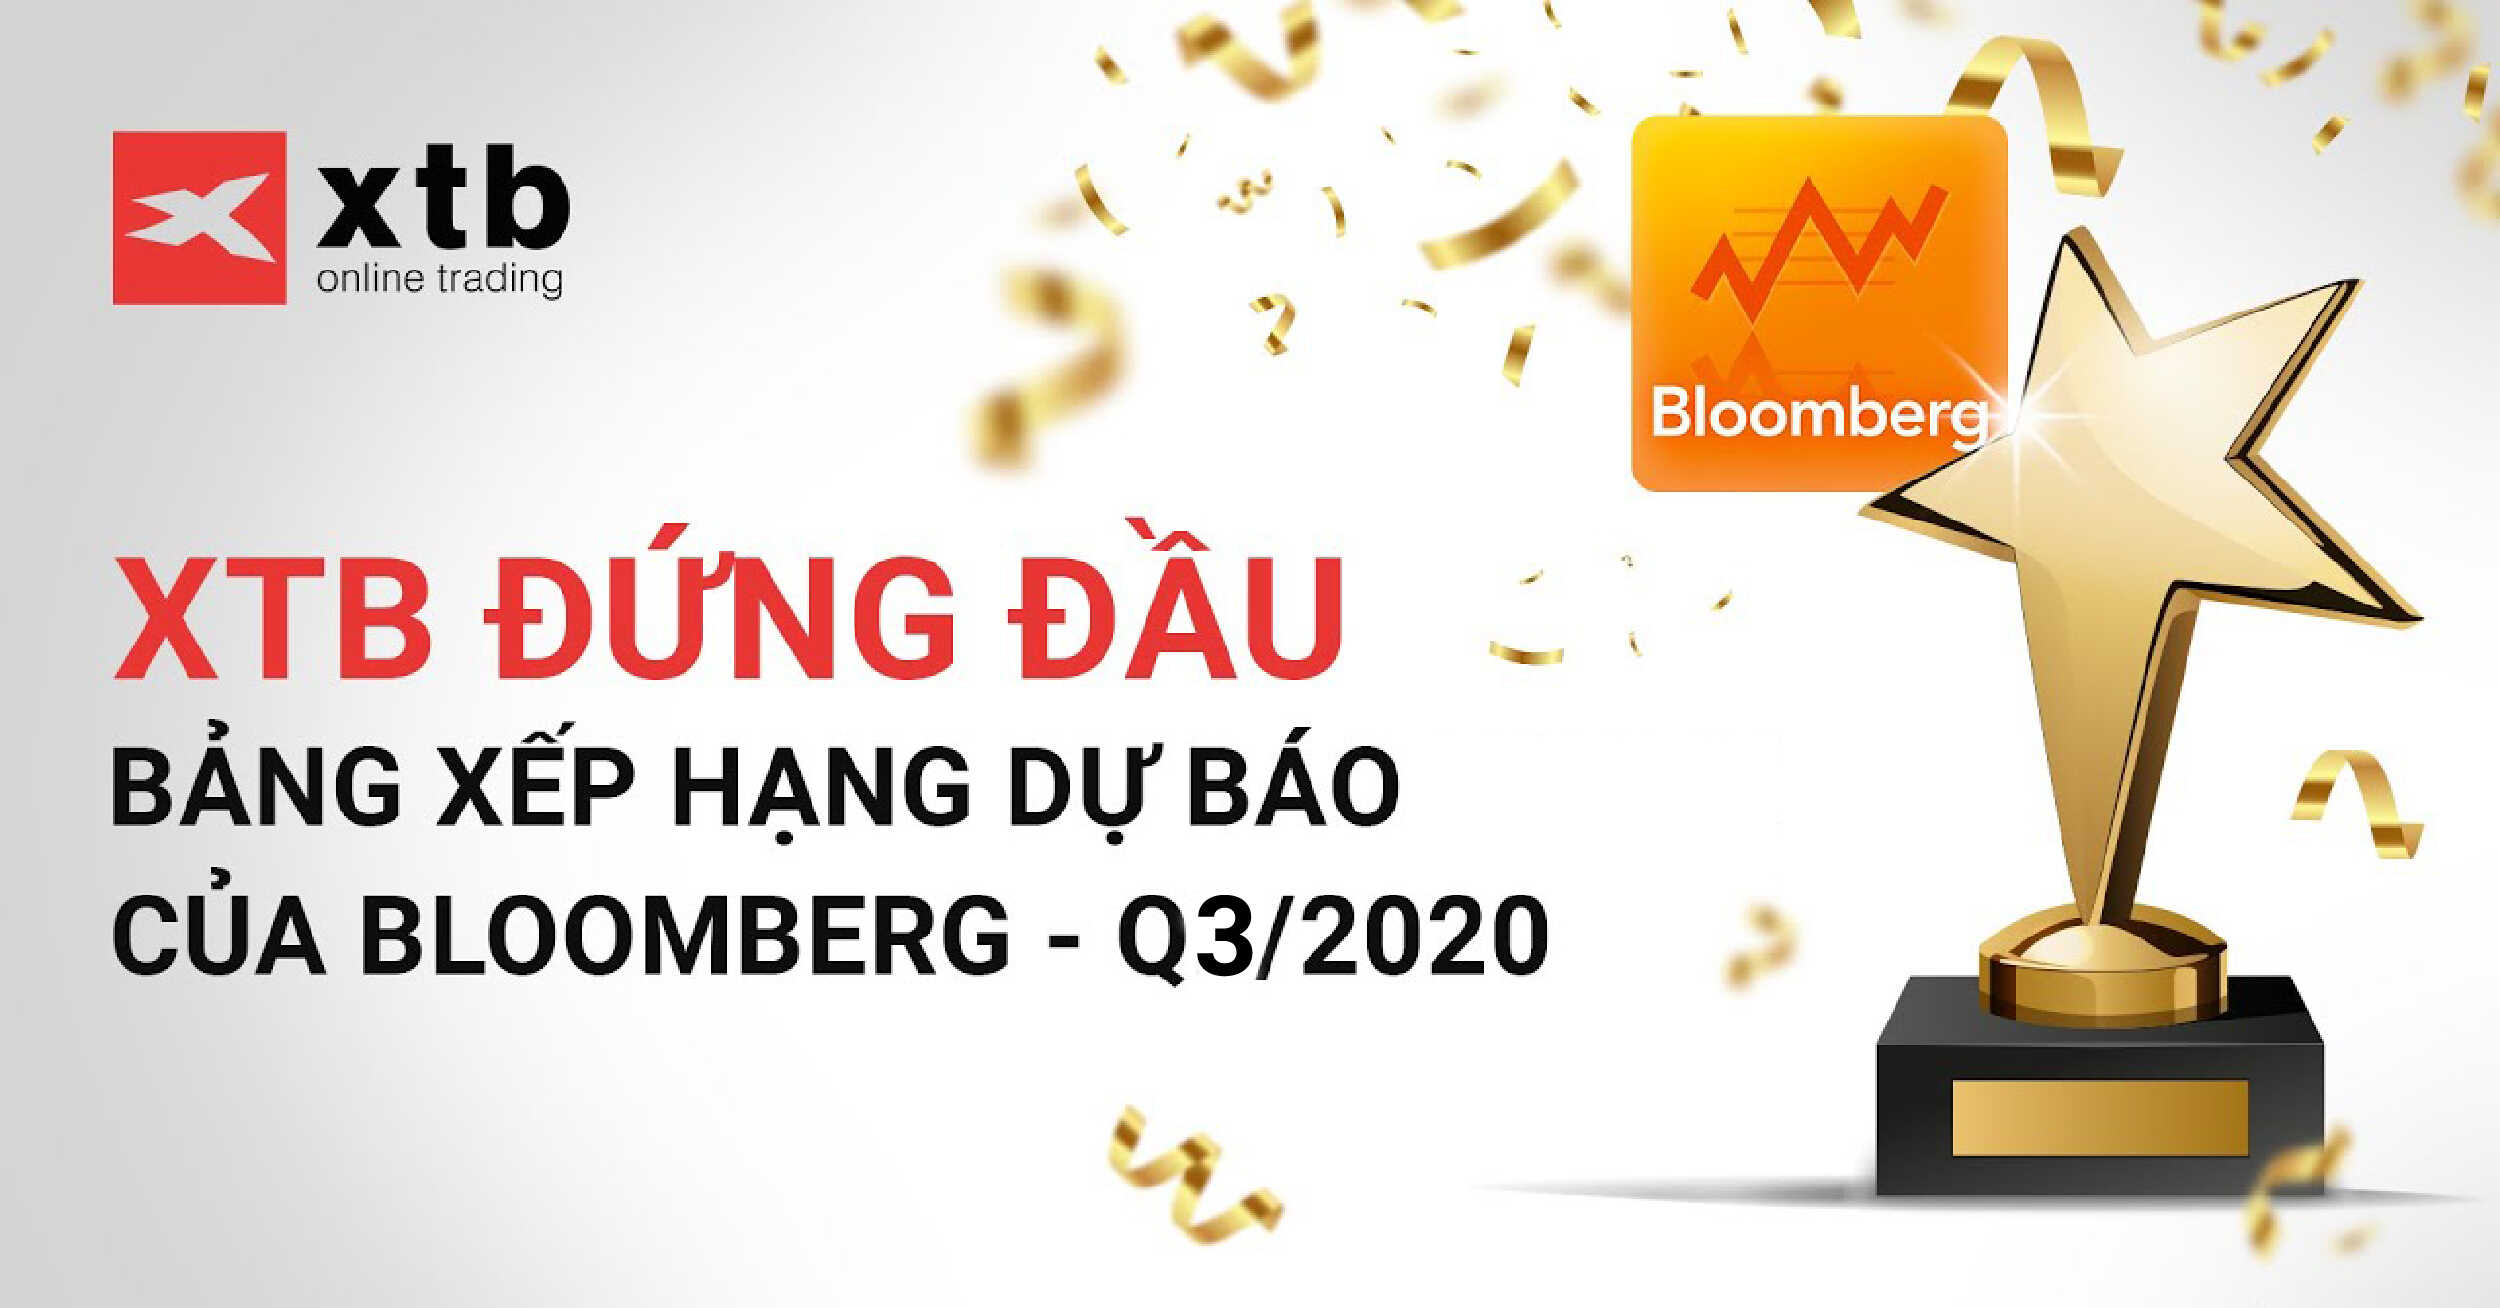 XTB Dẫn Đầu Bảng Xếp Hạng Của Bloomberg Quý 3 Năm 2020